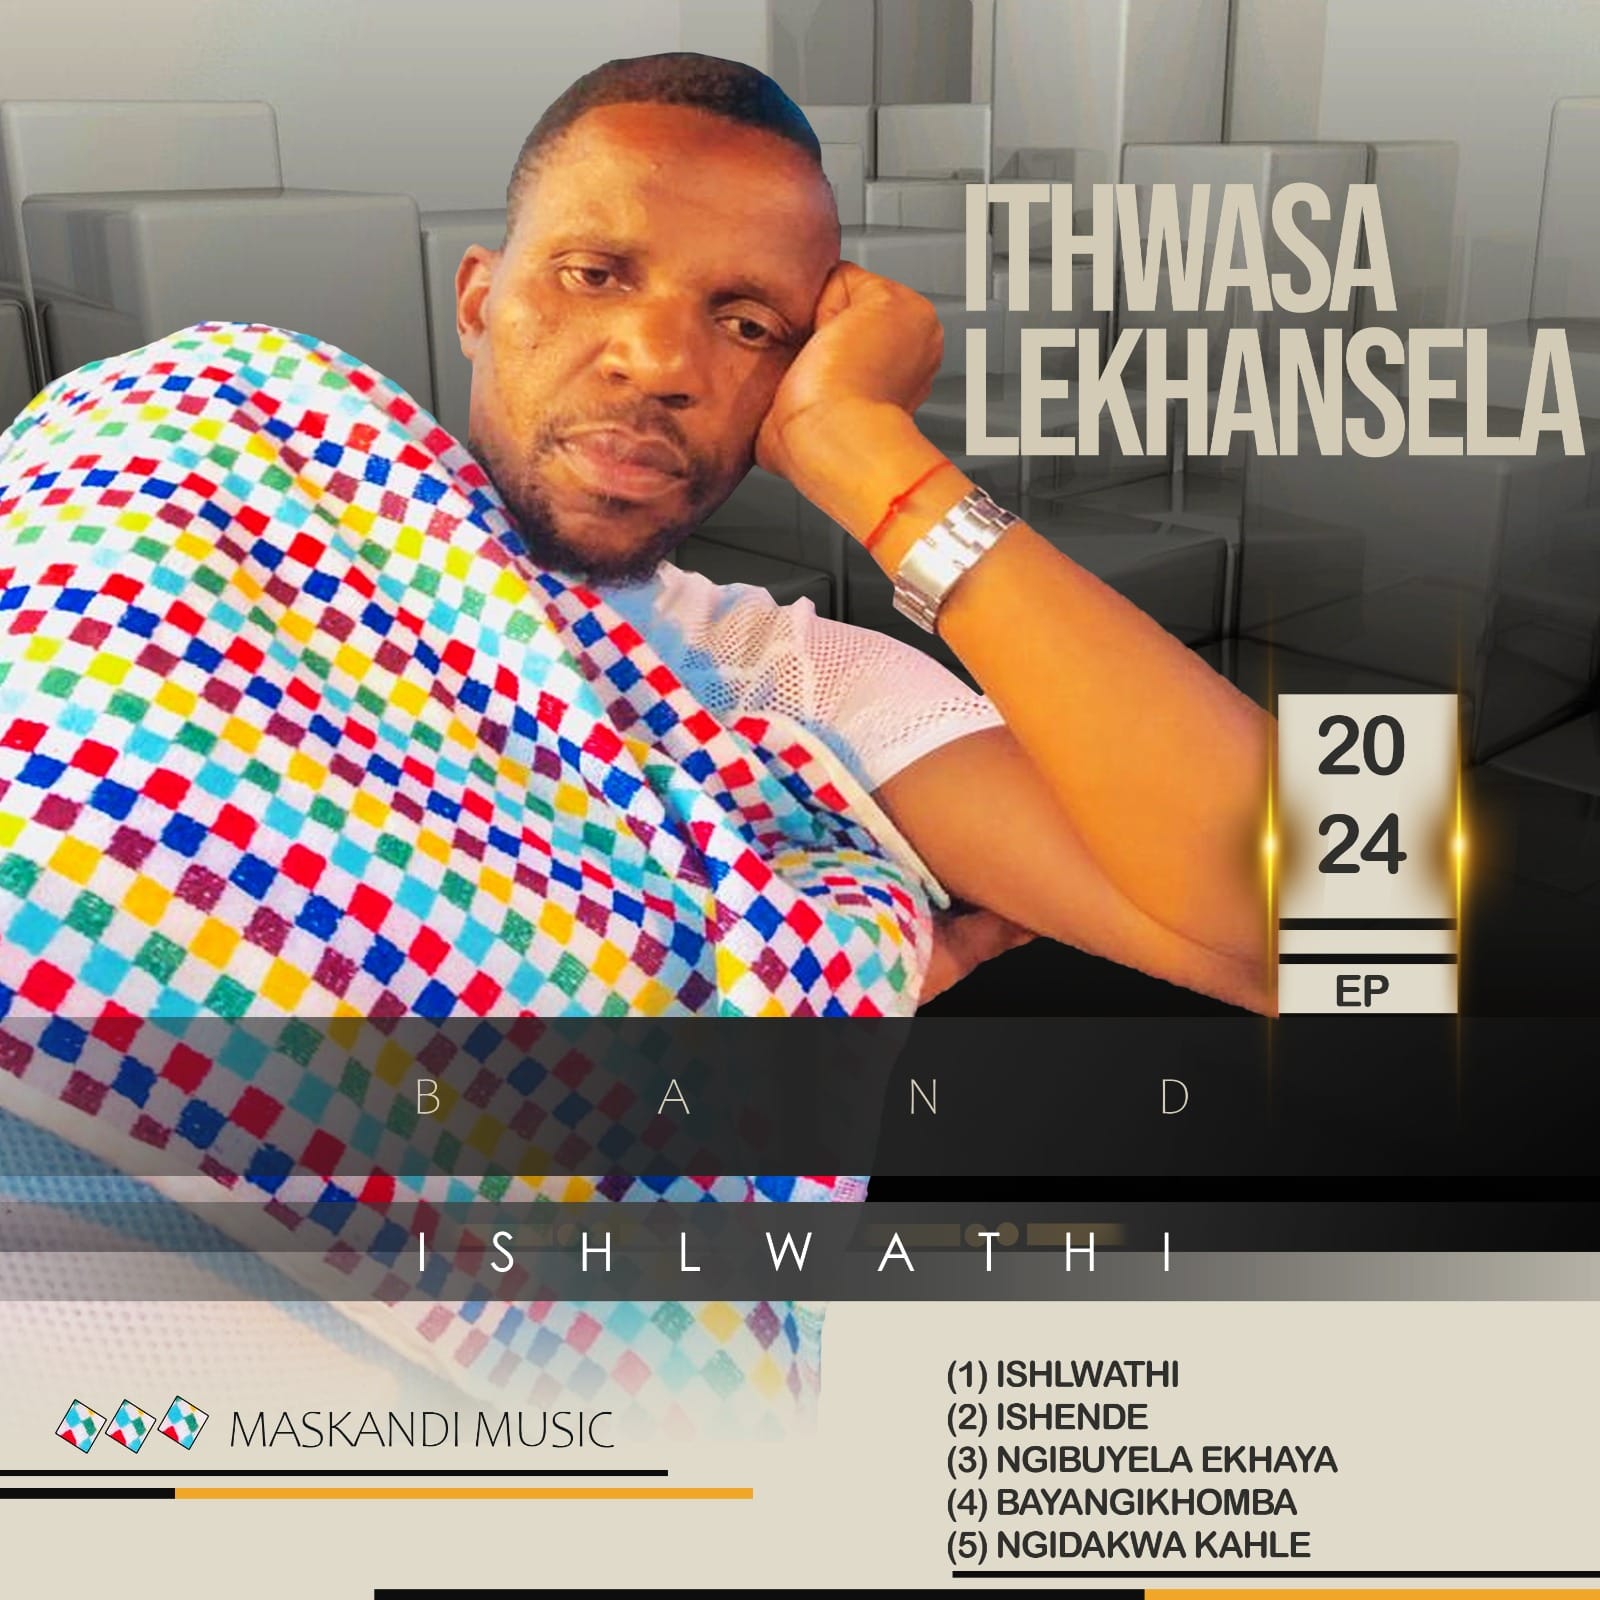 Ithwasa Lekhansela Ishlwathi EP Download